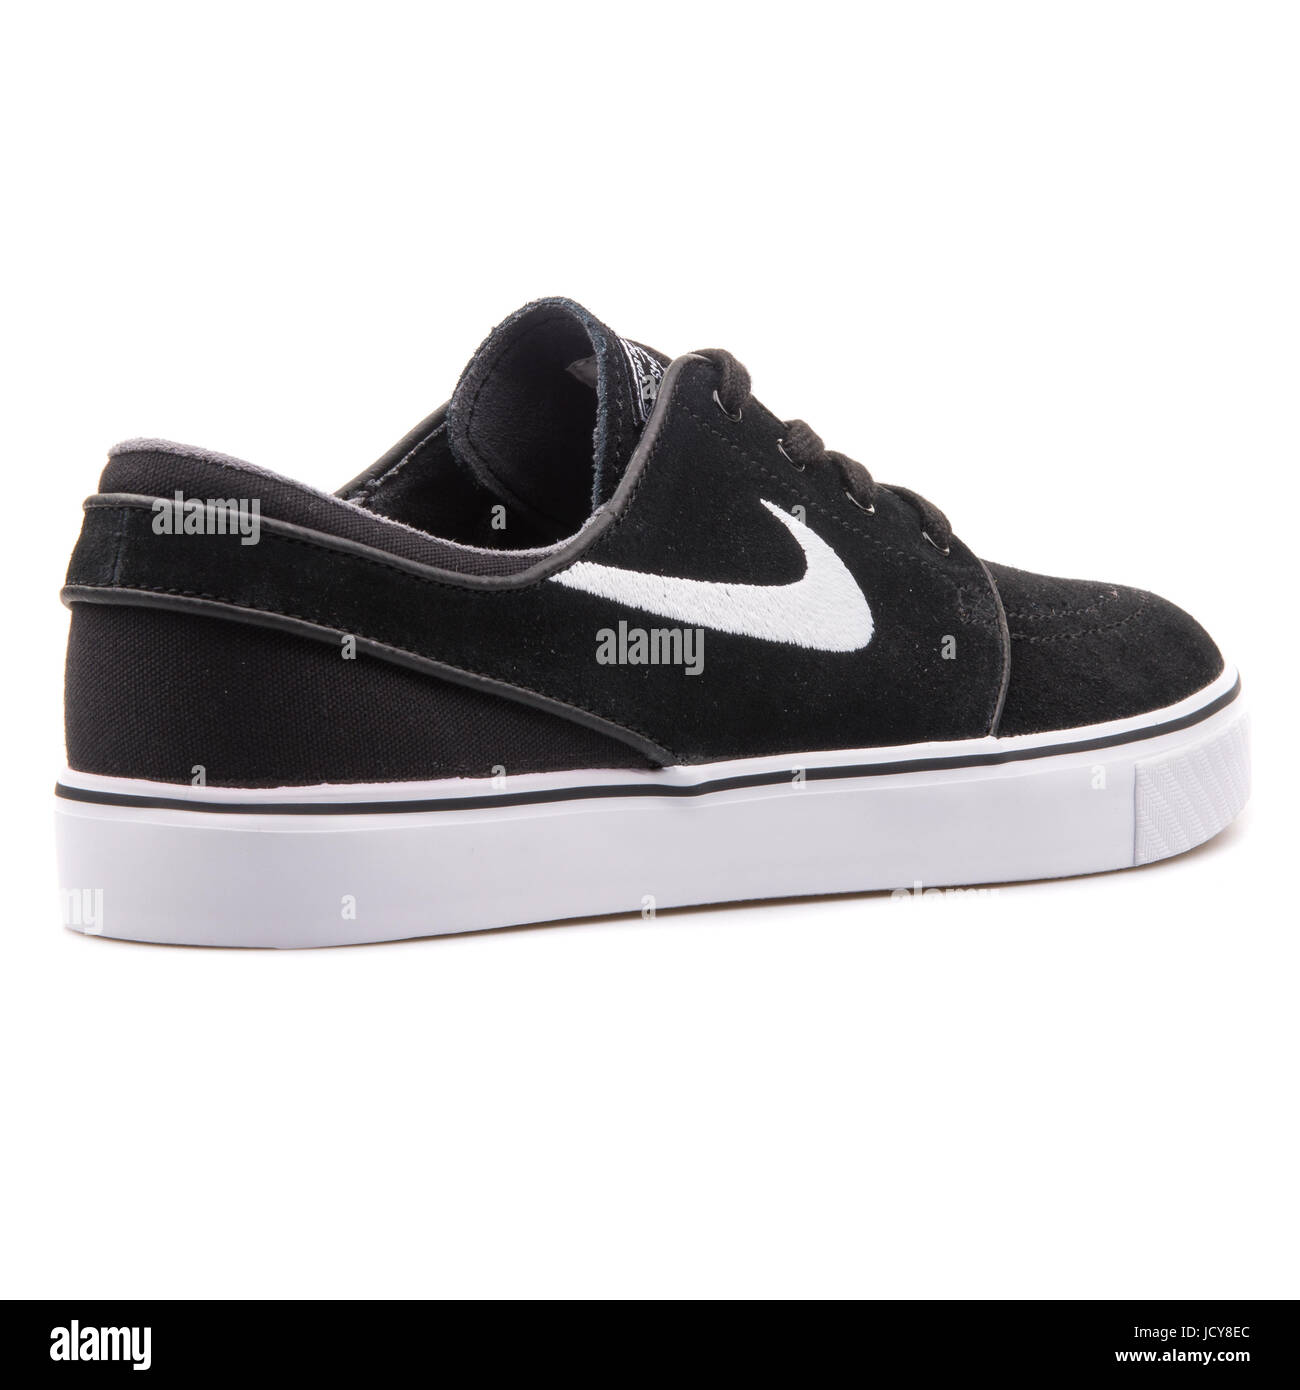 Zoom Stefan del blanco y negro Skateboarding Shoes - 333824-026 Fotografía de stock - Alamy